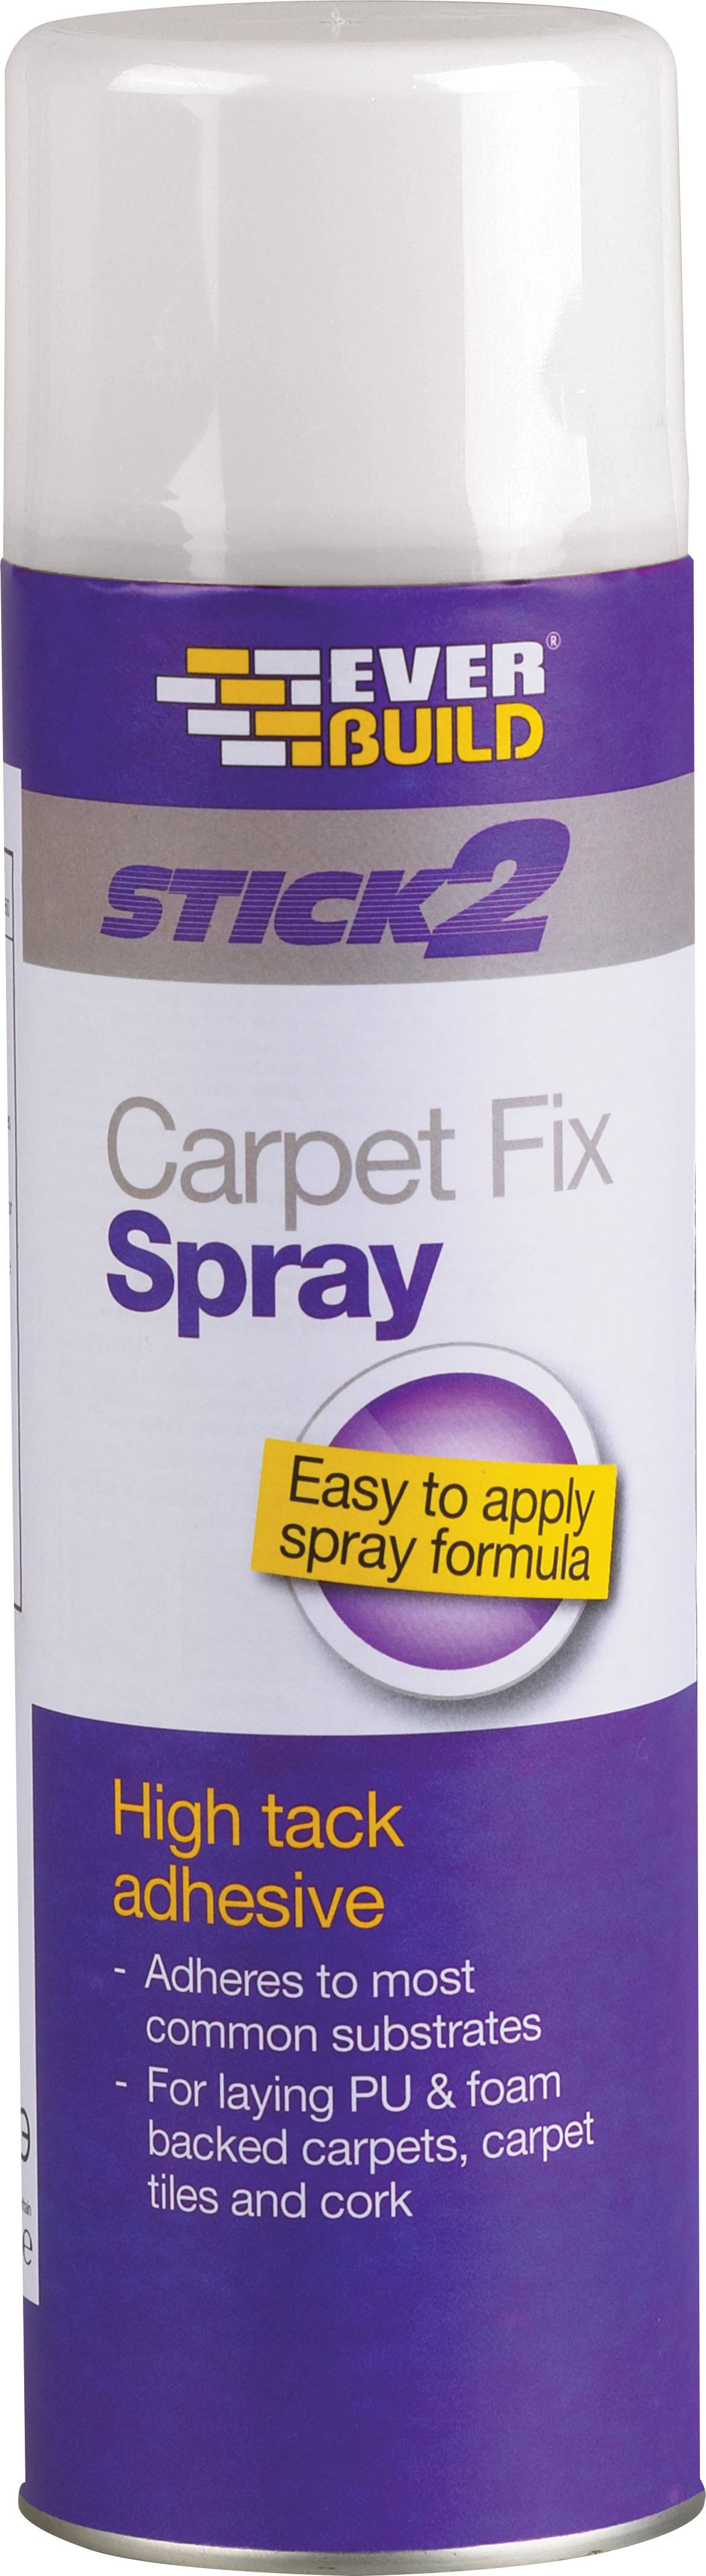 Everbuild Stick2 Carpet Fix Spray - 500ml